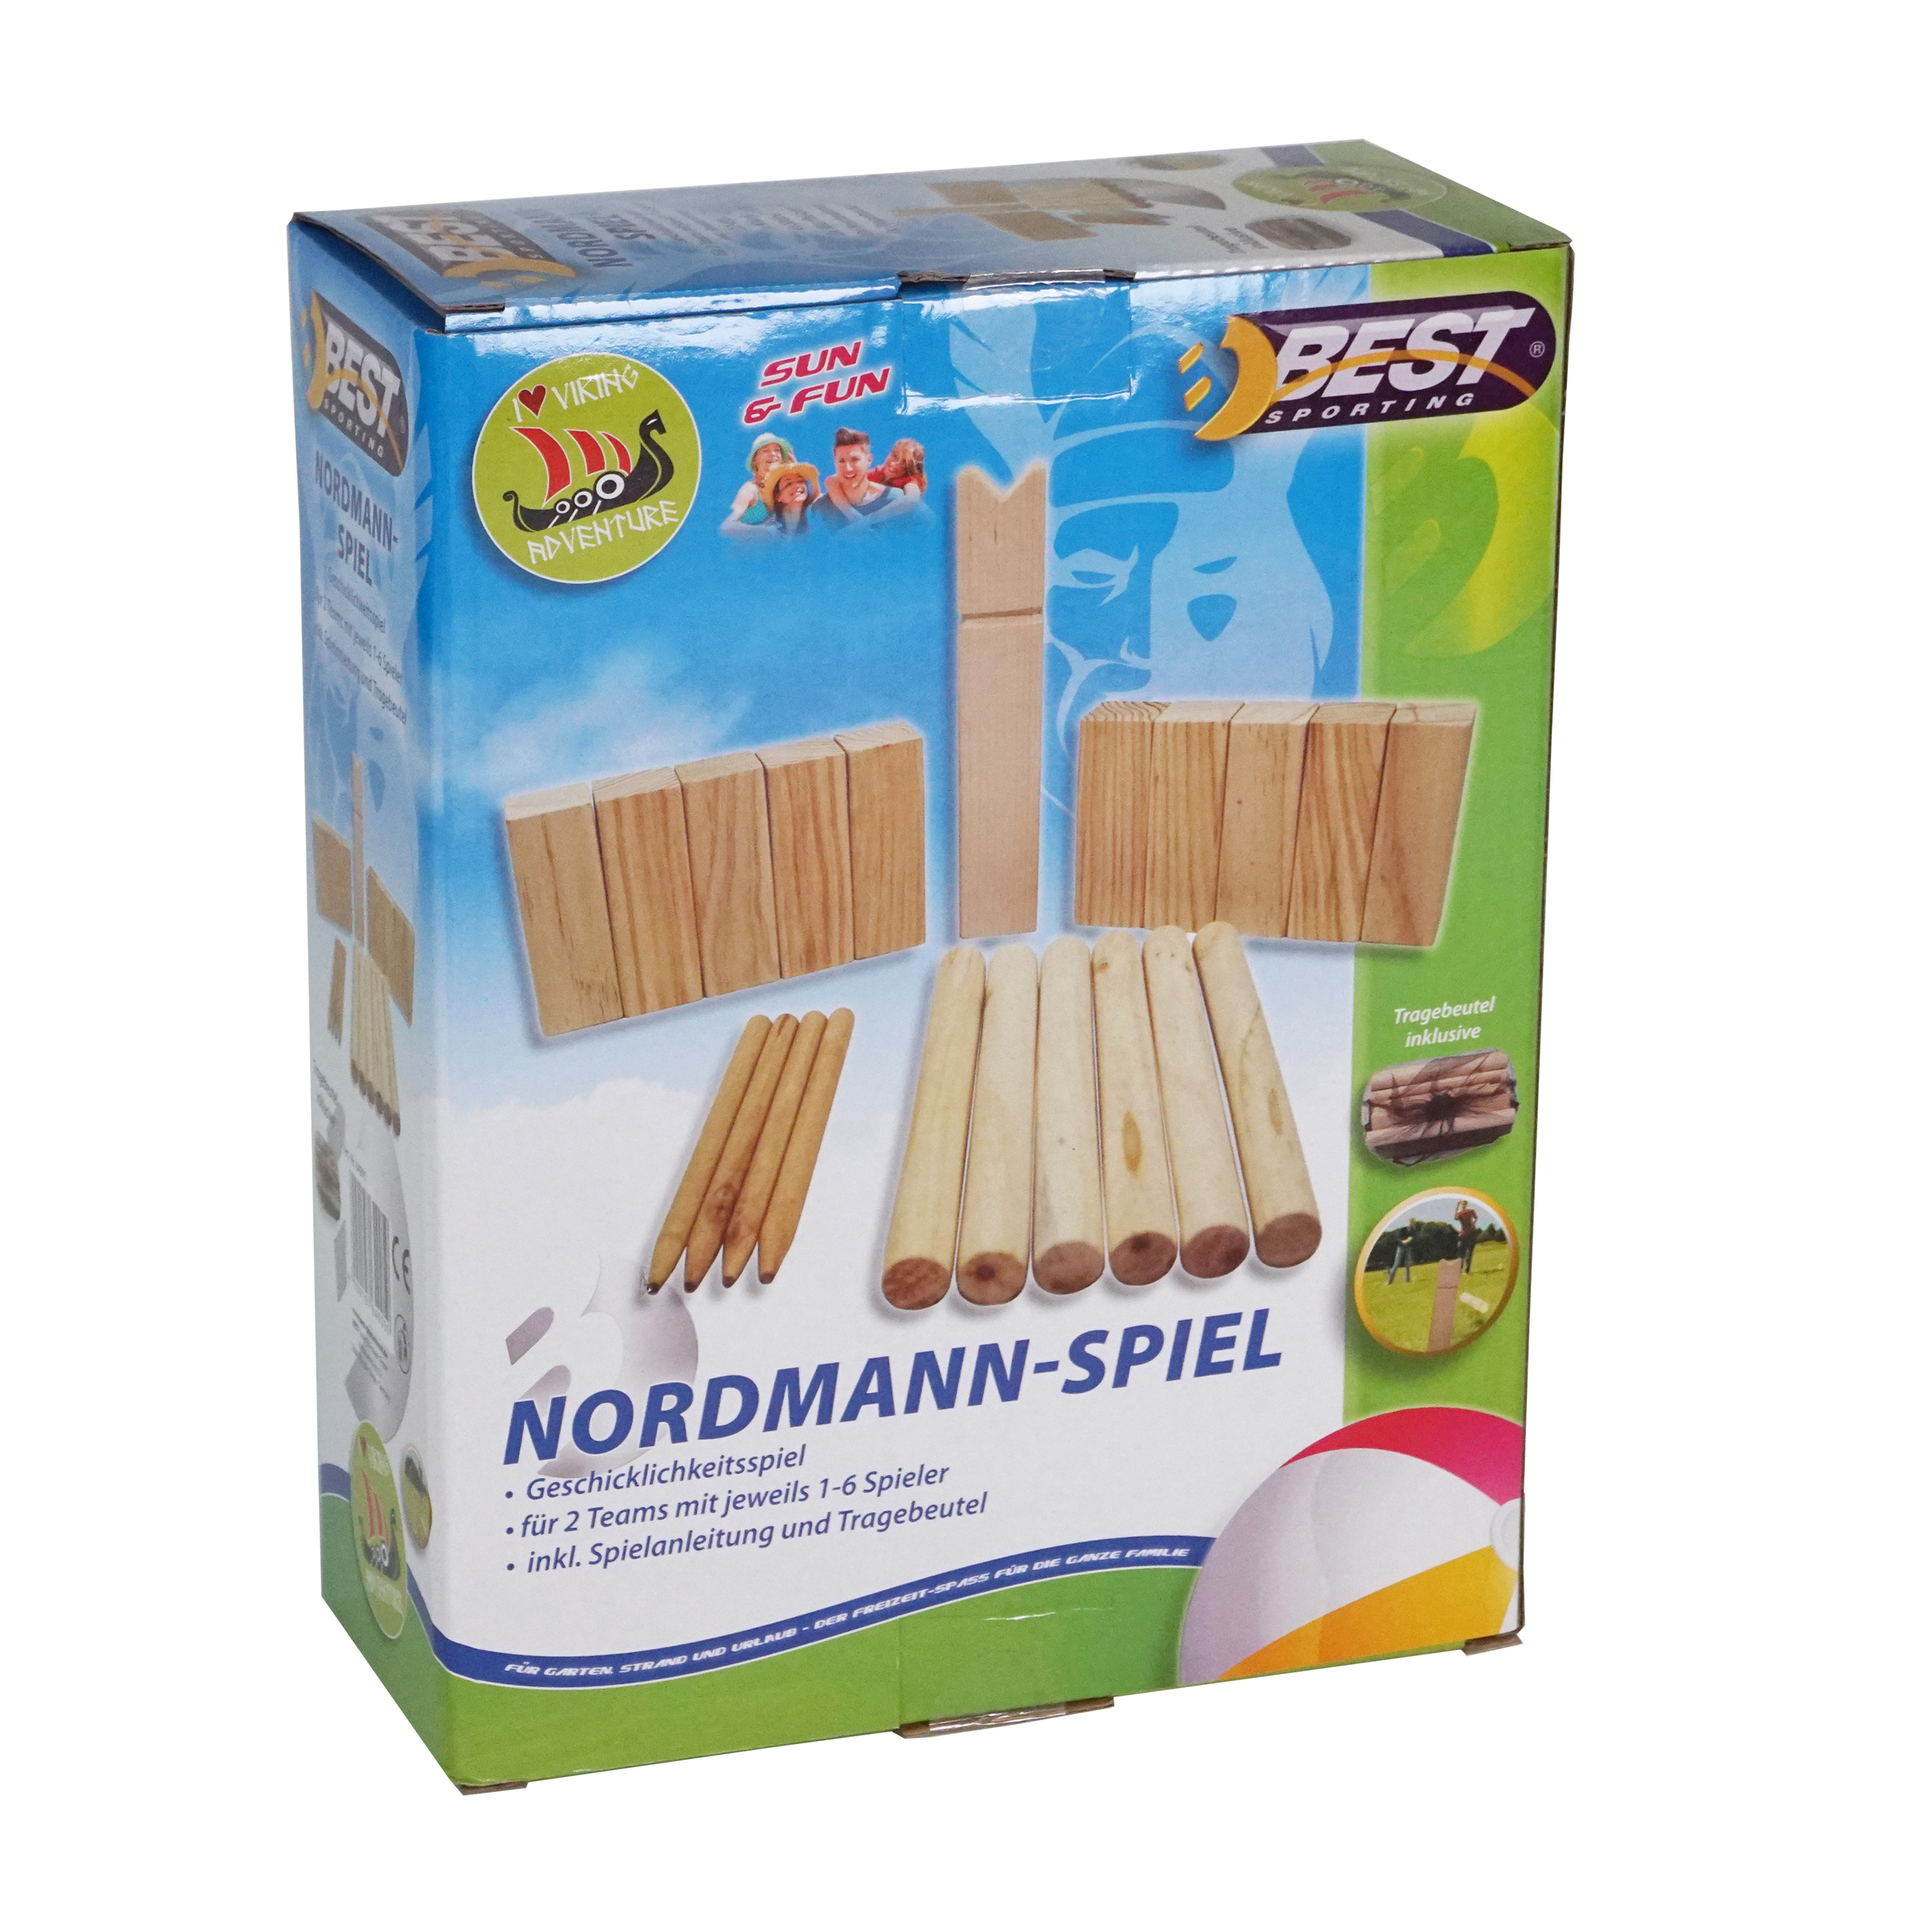 Nordmann-Spiel